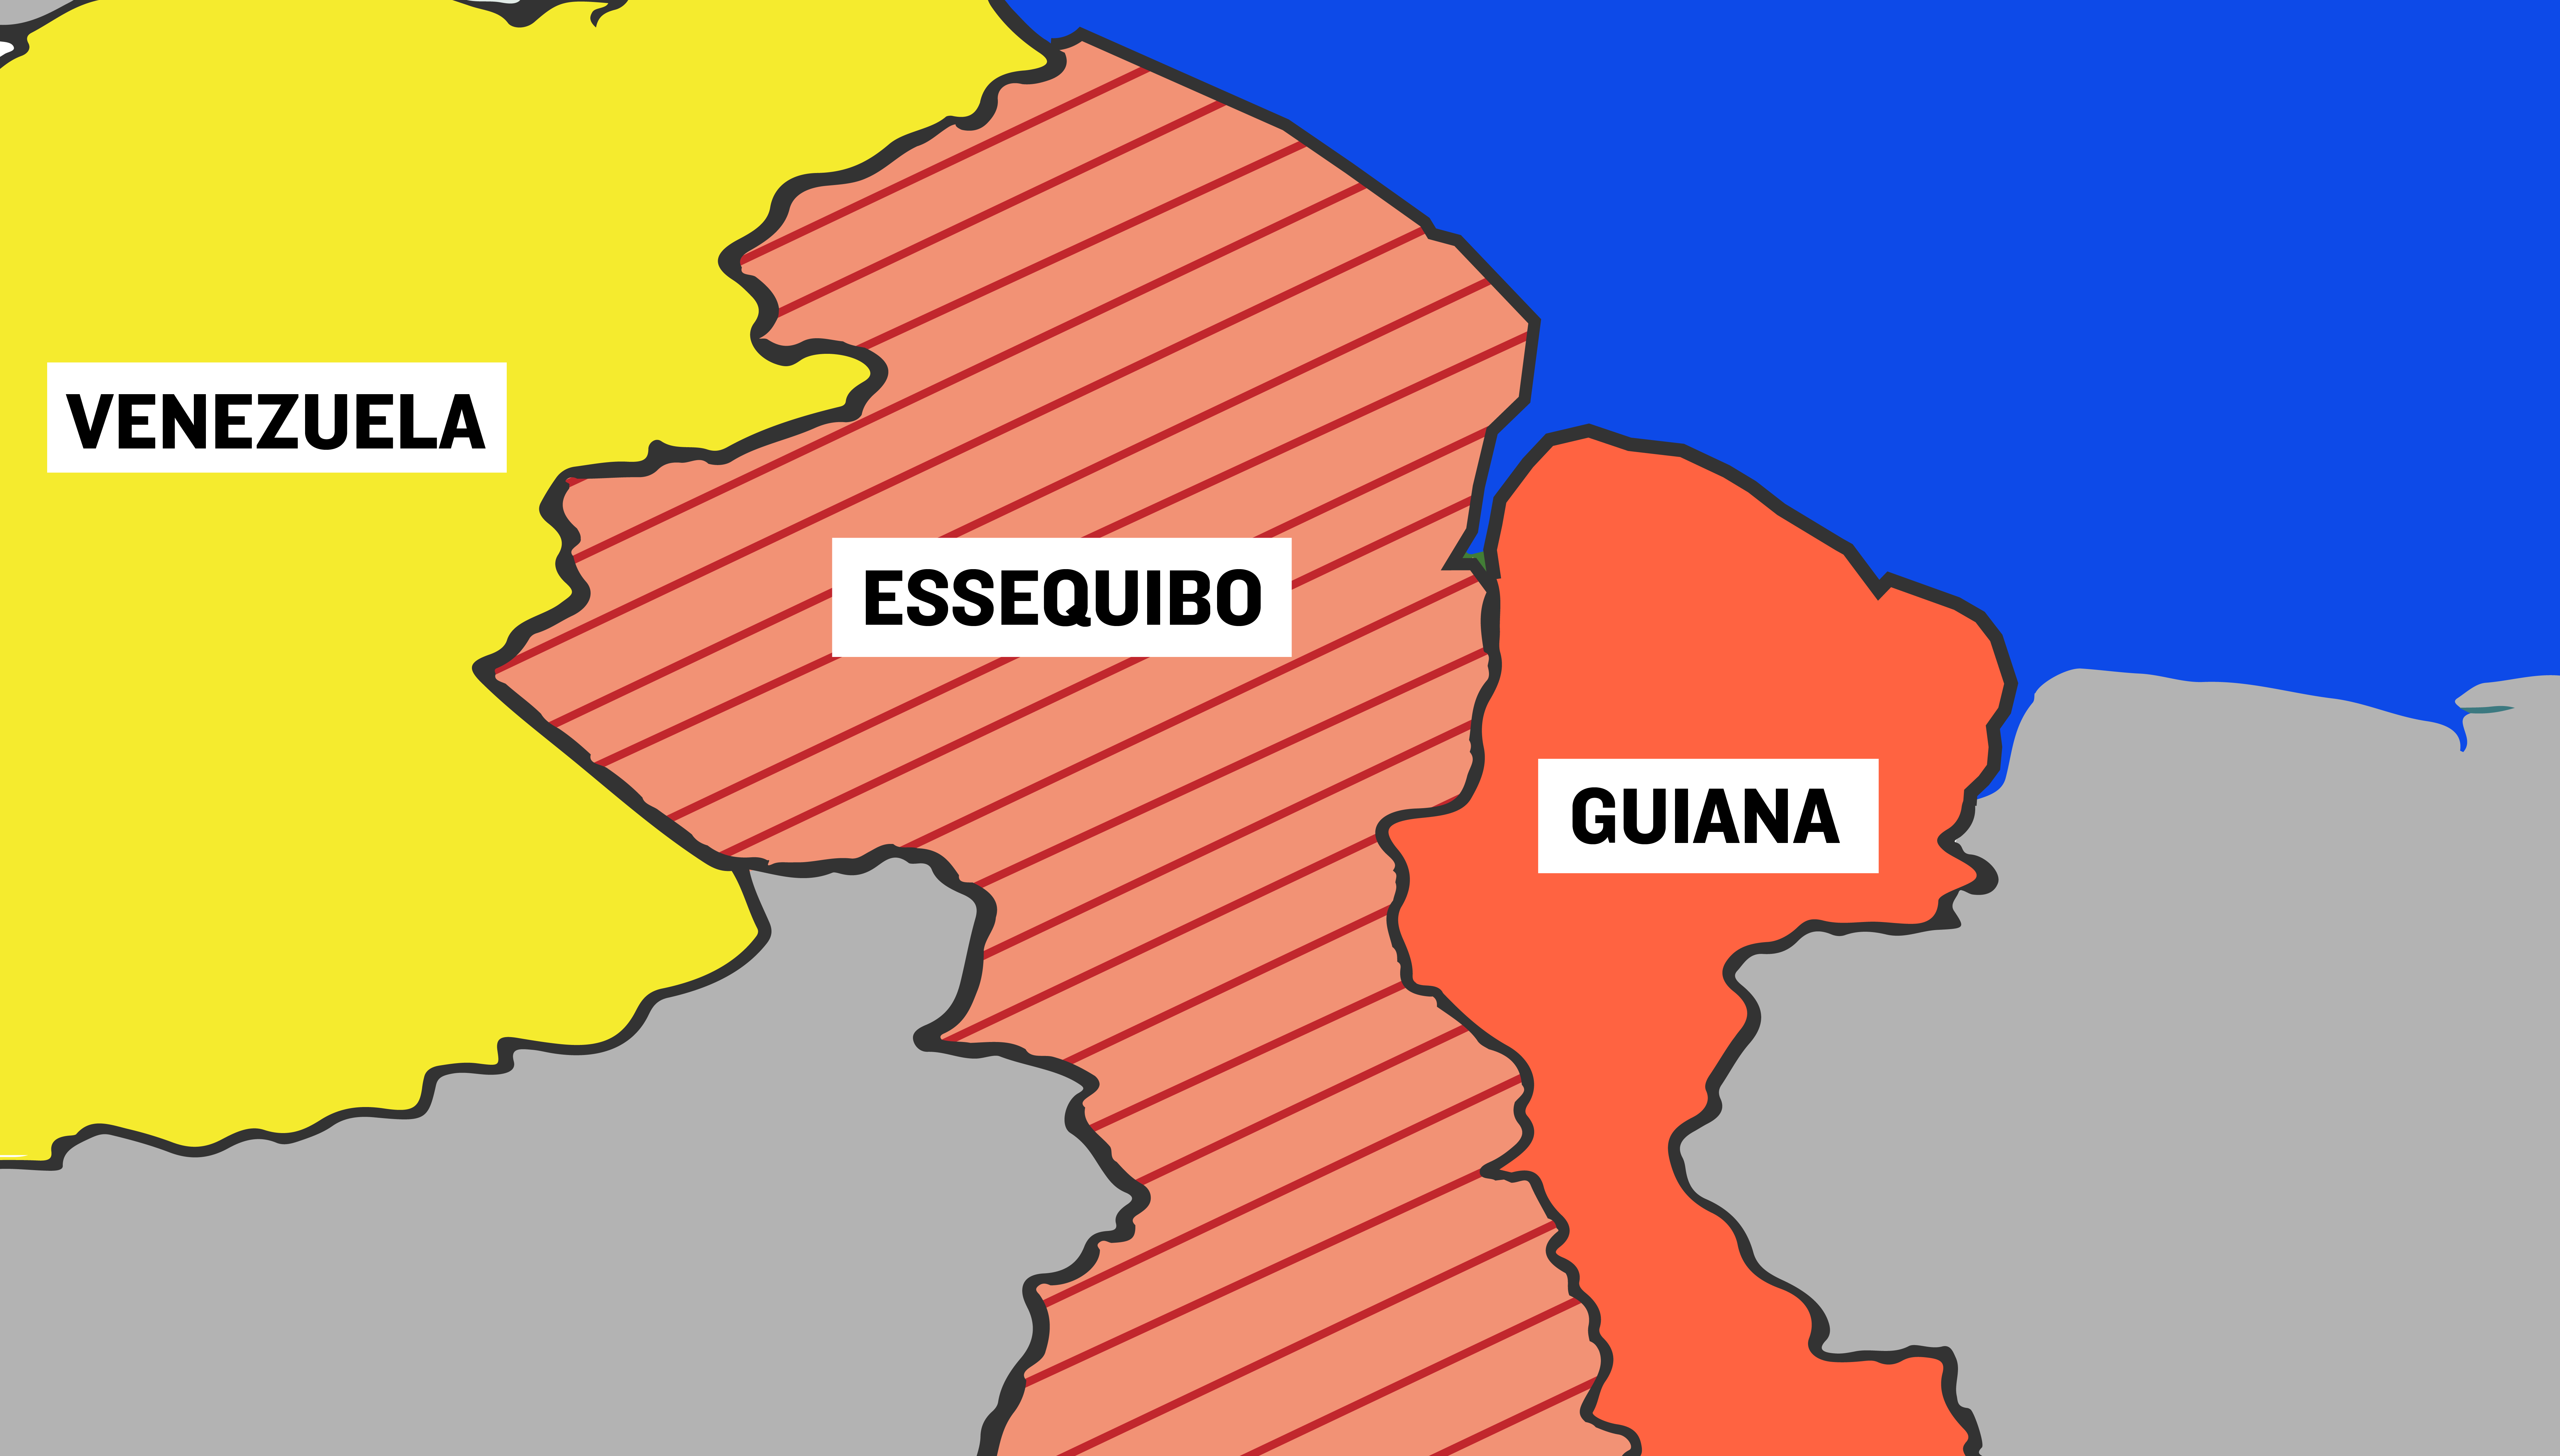 Por que a Venezuela quer anexar o território da Guiana? | Guia do Estudante